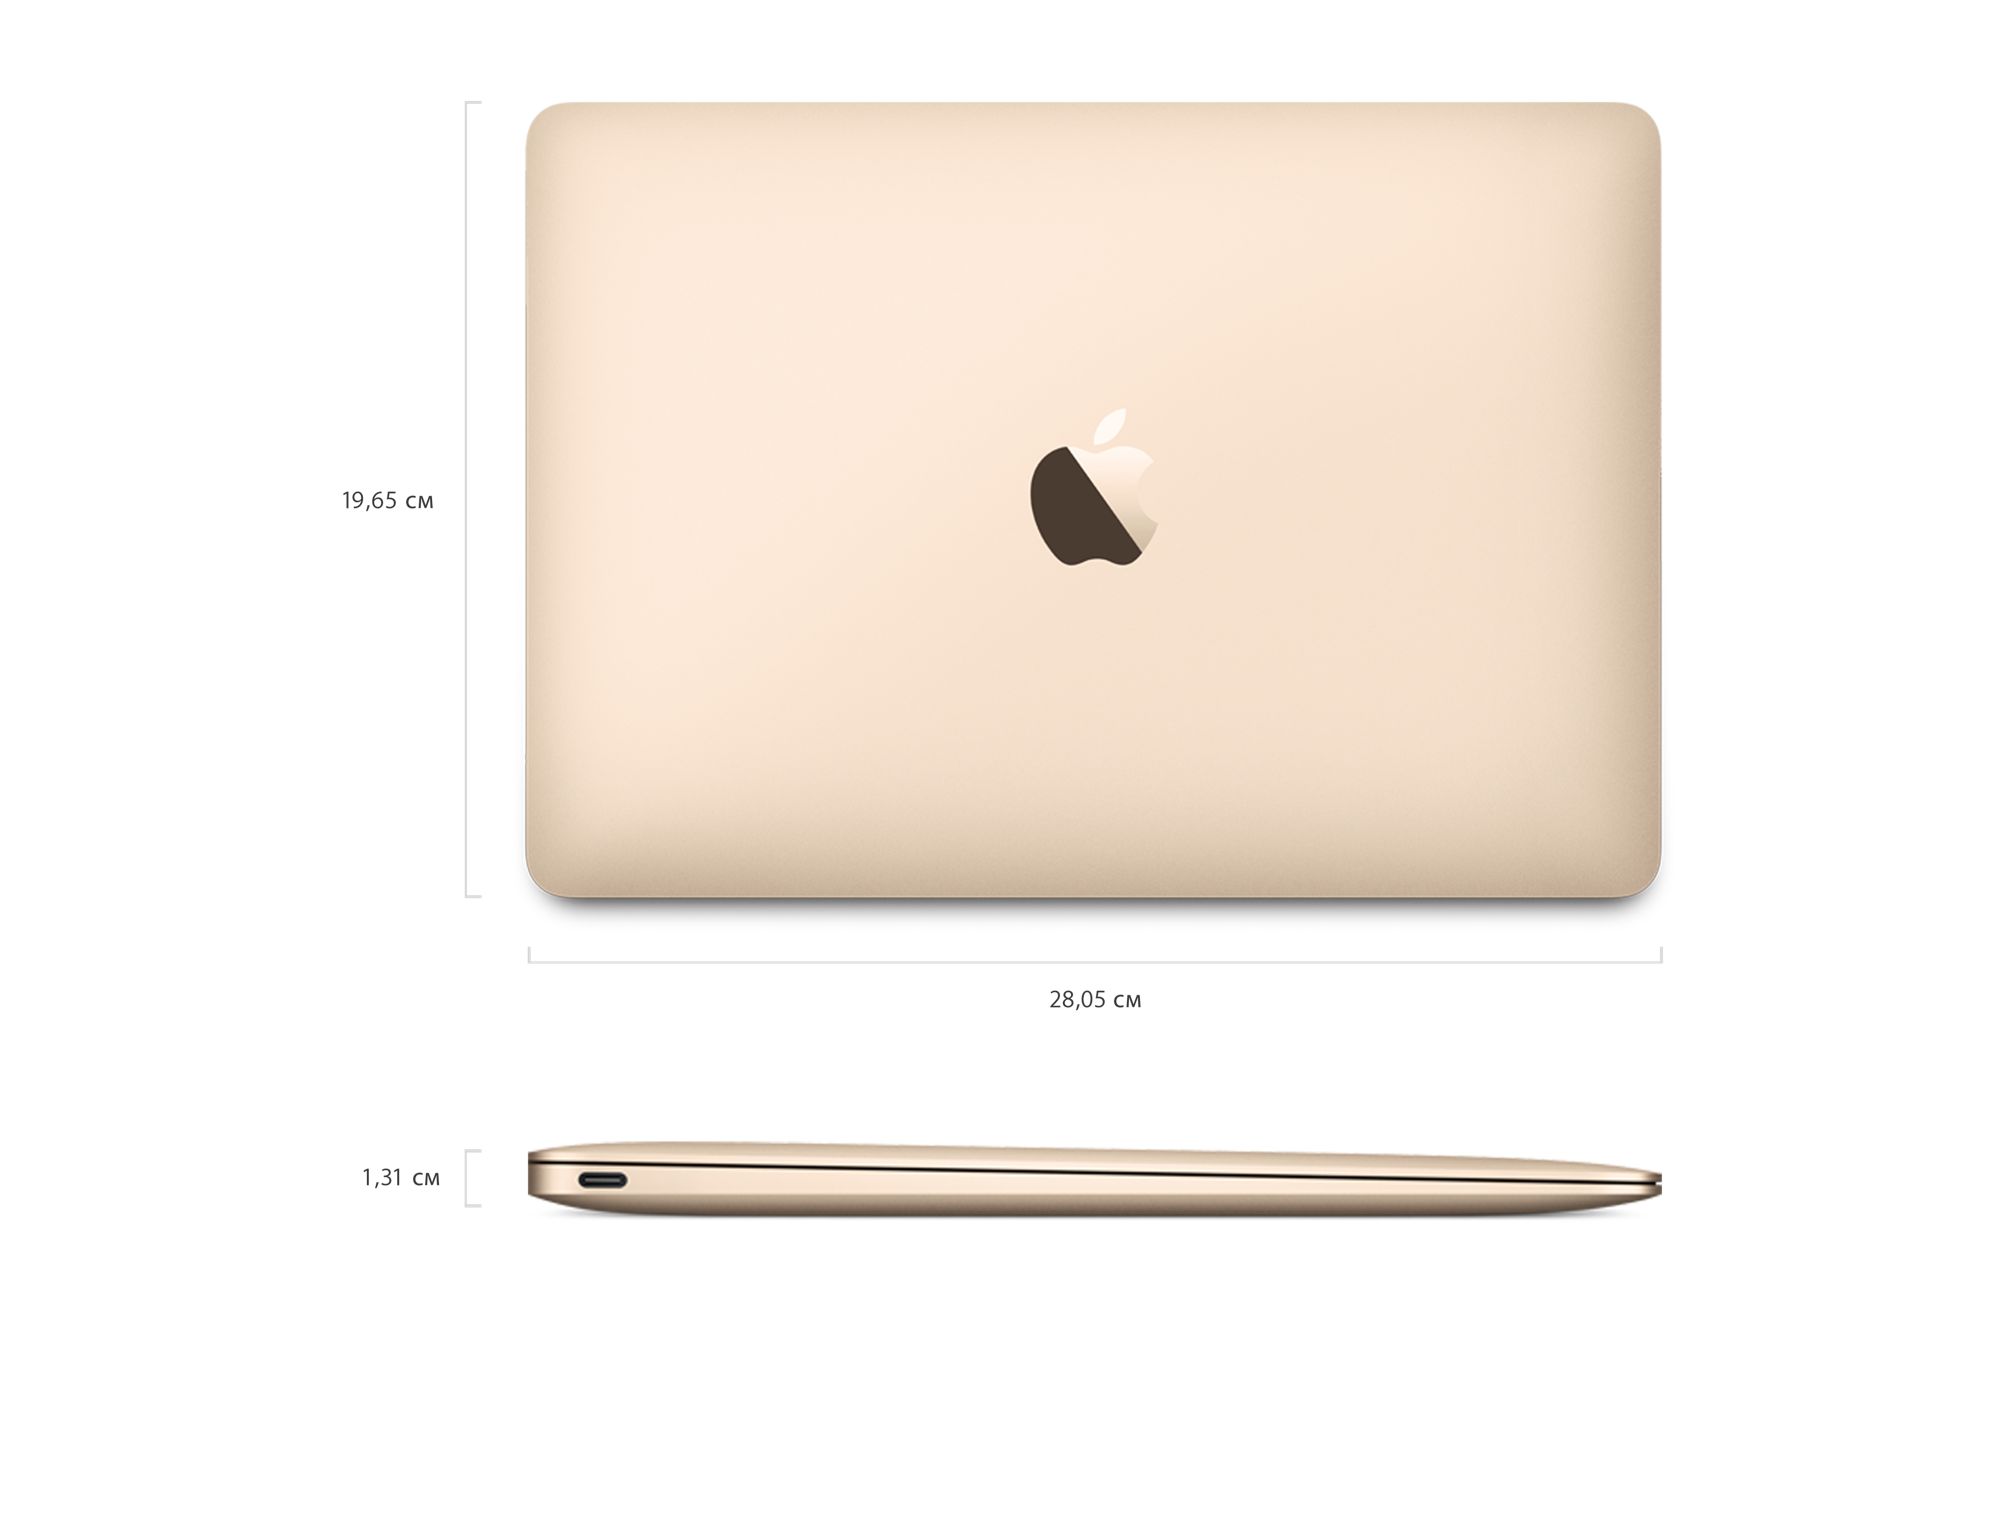 M2 8 256. Apple MACBOOK 12. Apple MACBOOK 12 Pro. Apple a1932 MACBOOK Air. Ноутбук Apple MACBOOK Air 13 Gold.